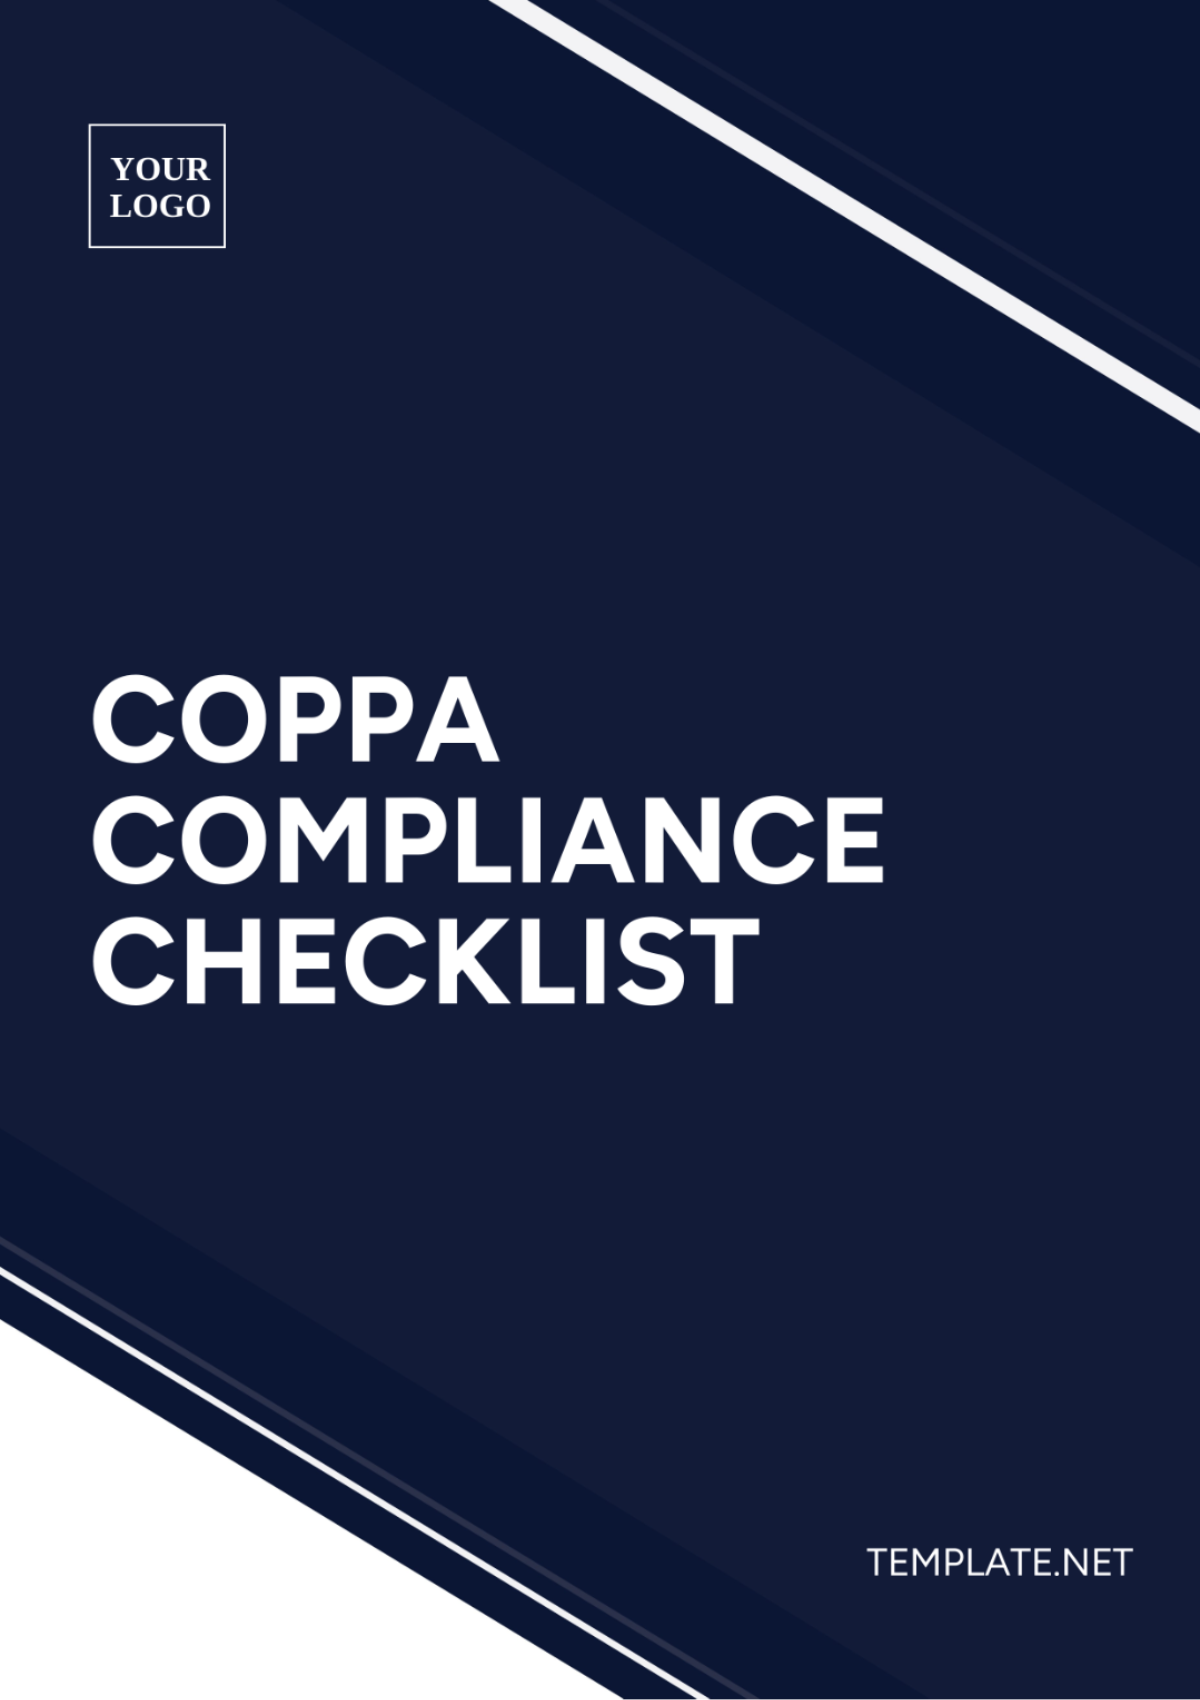 COPPA Compliance Checklist Template